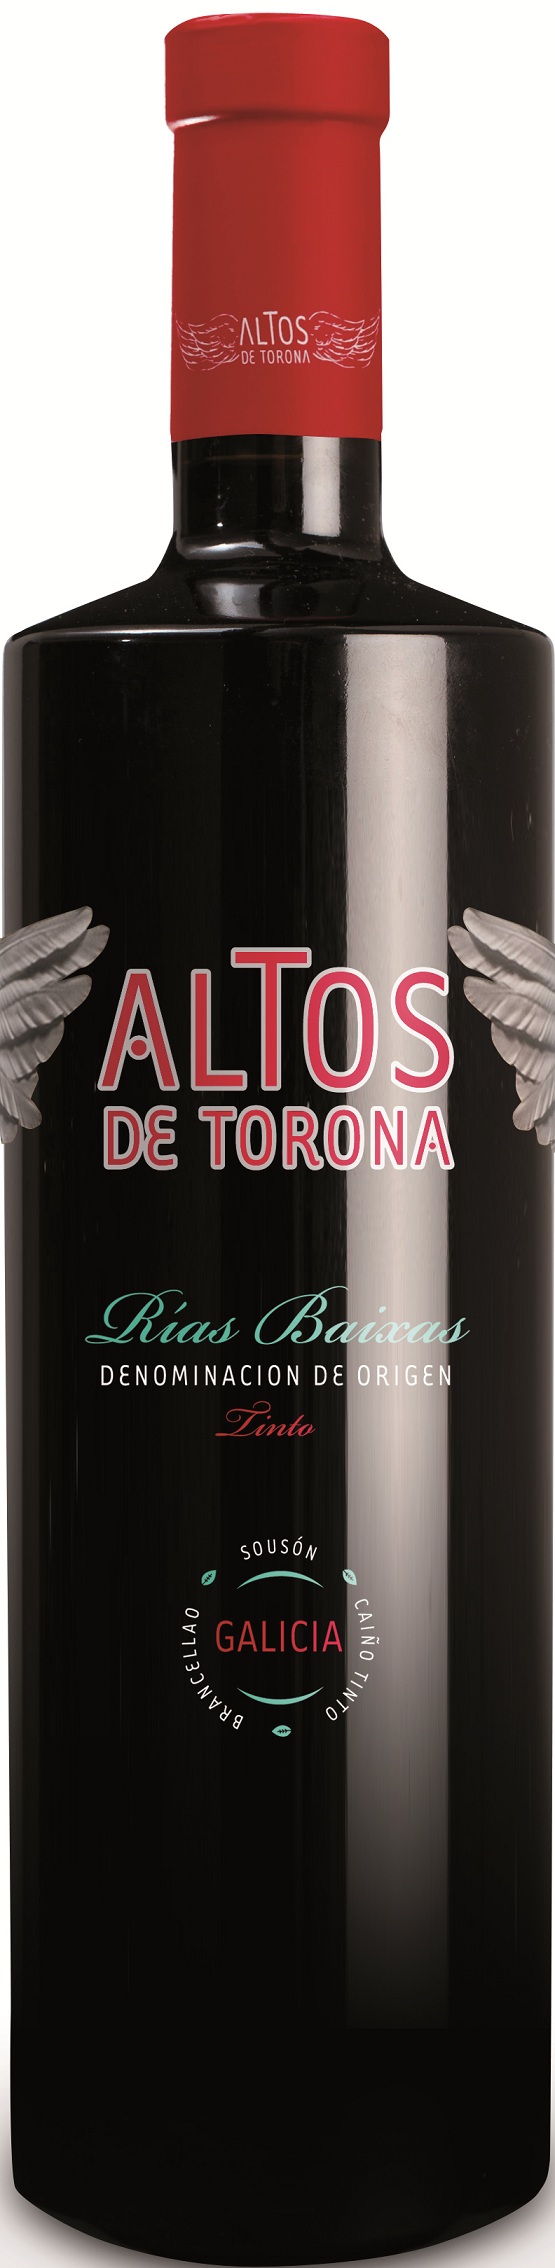 Bild von der Weinflasche Altos de Torona Tinto